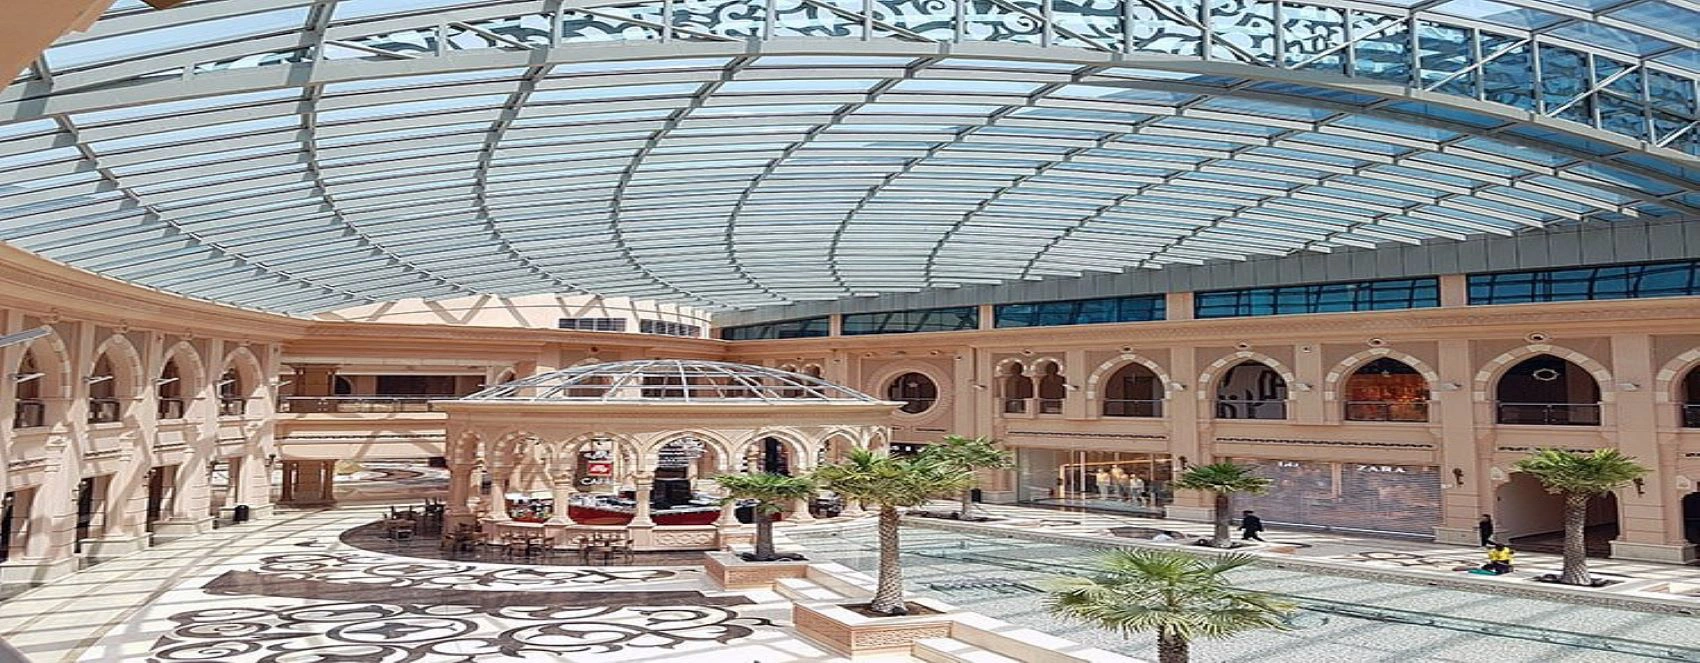 Mirqab Mall